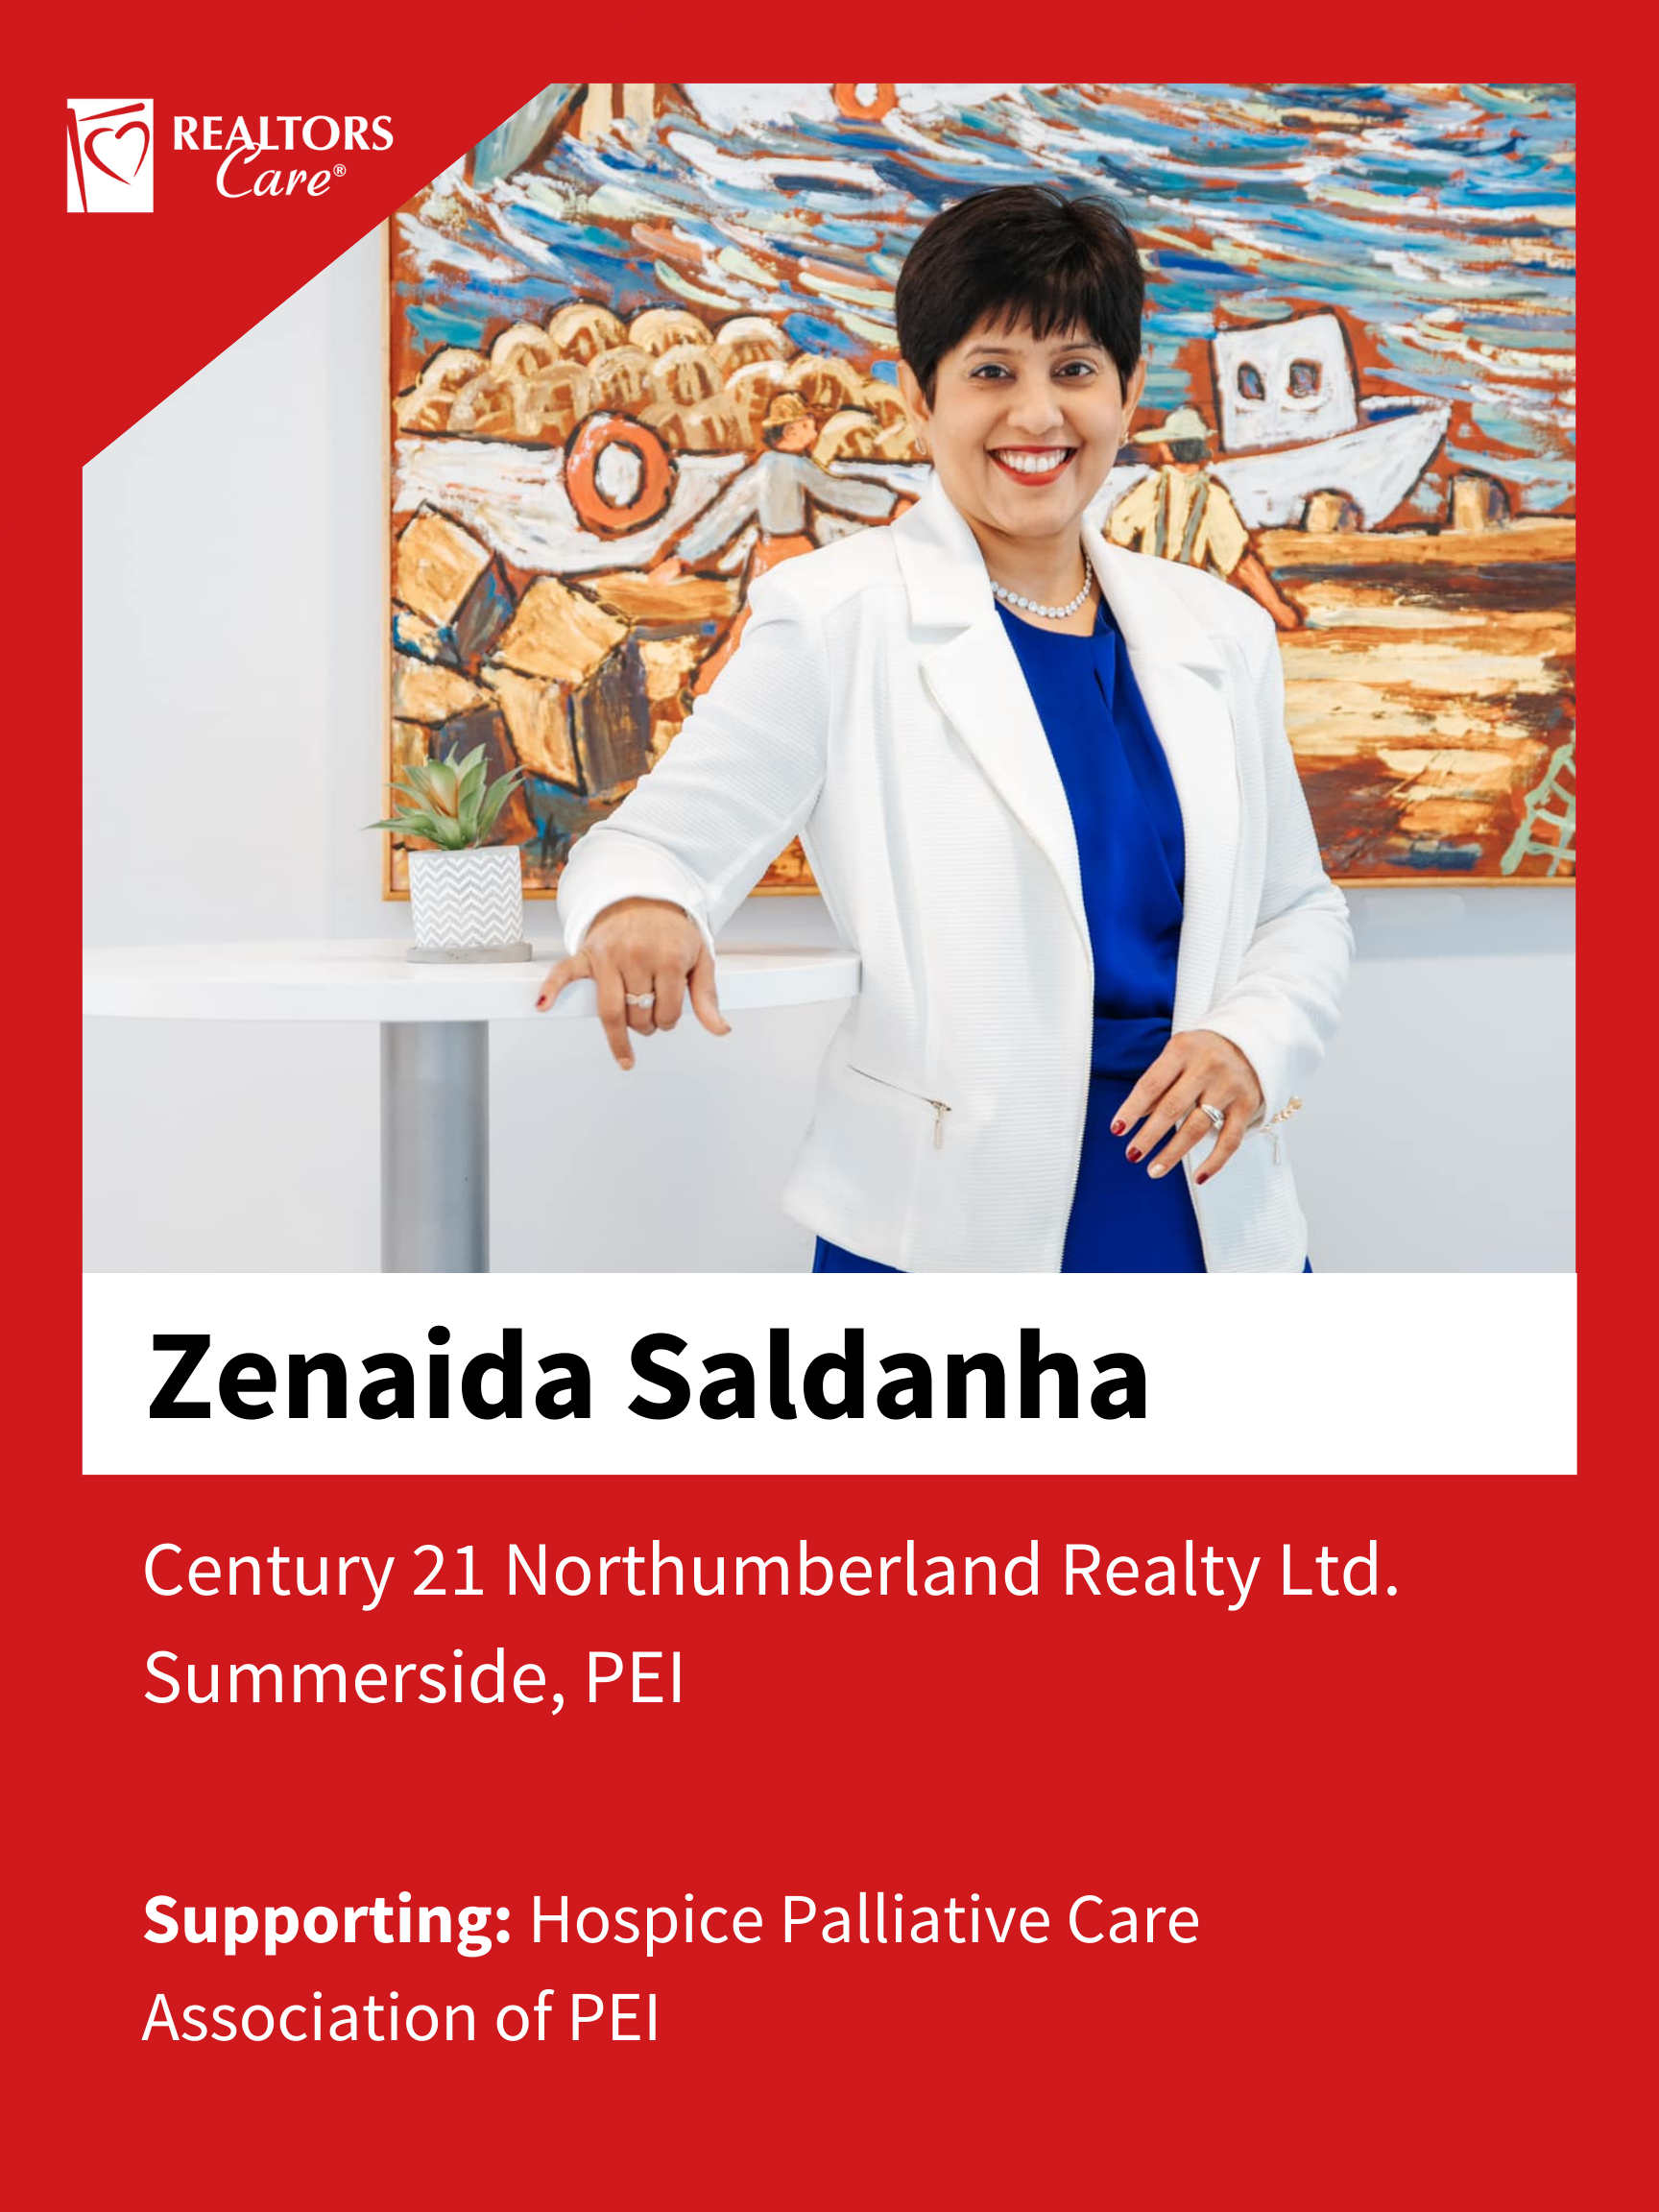 Zenaida Saldanha
Summerside	PEI
